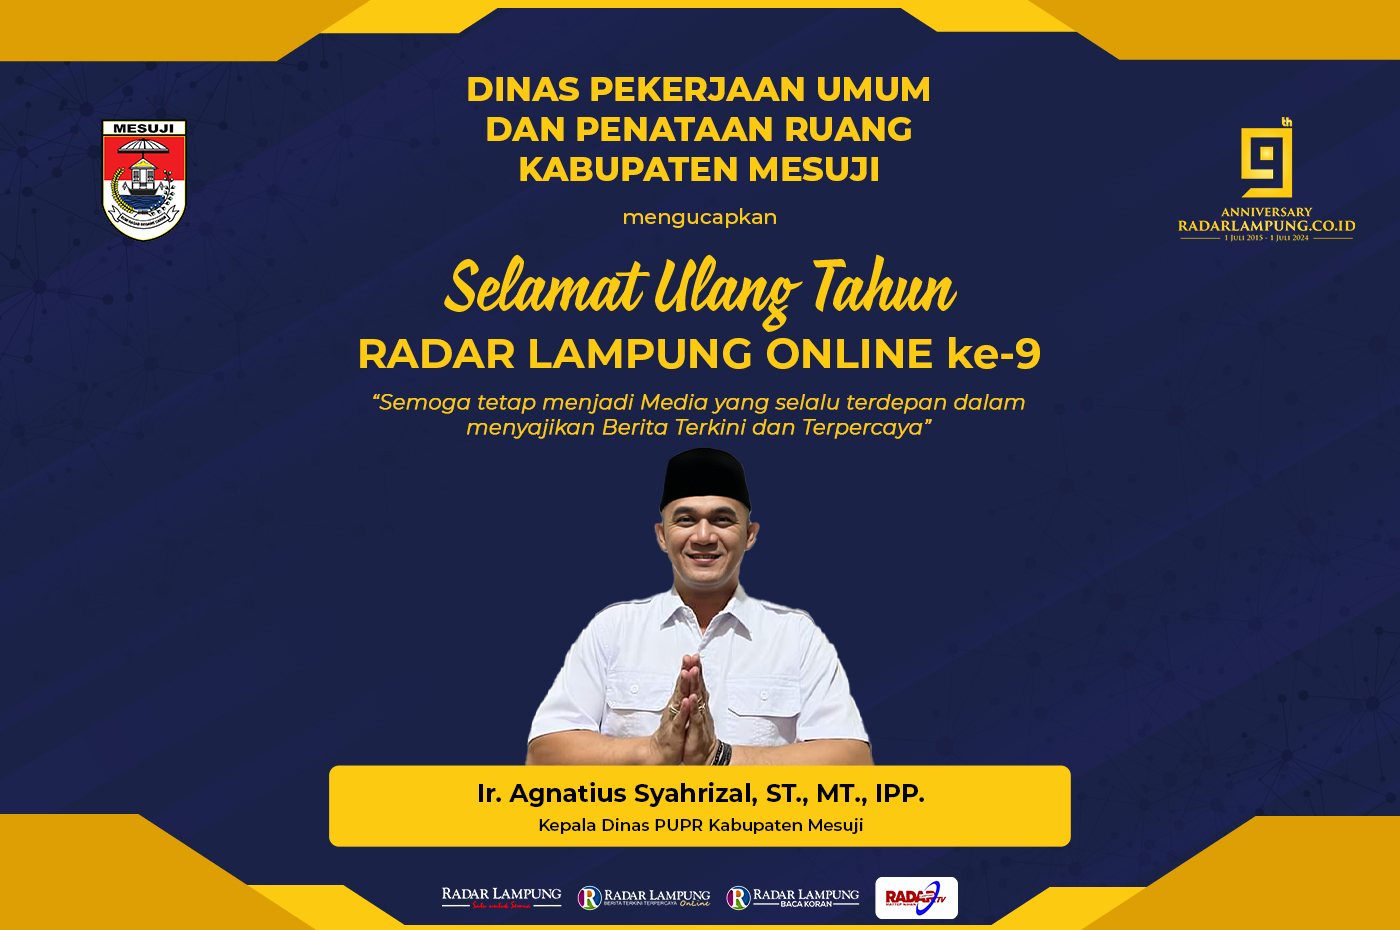 Dinas PUPR Kabupaten Mesuji Mengucapkan Selamat Ulang Tahun ke-9 Radar Lampung Online